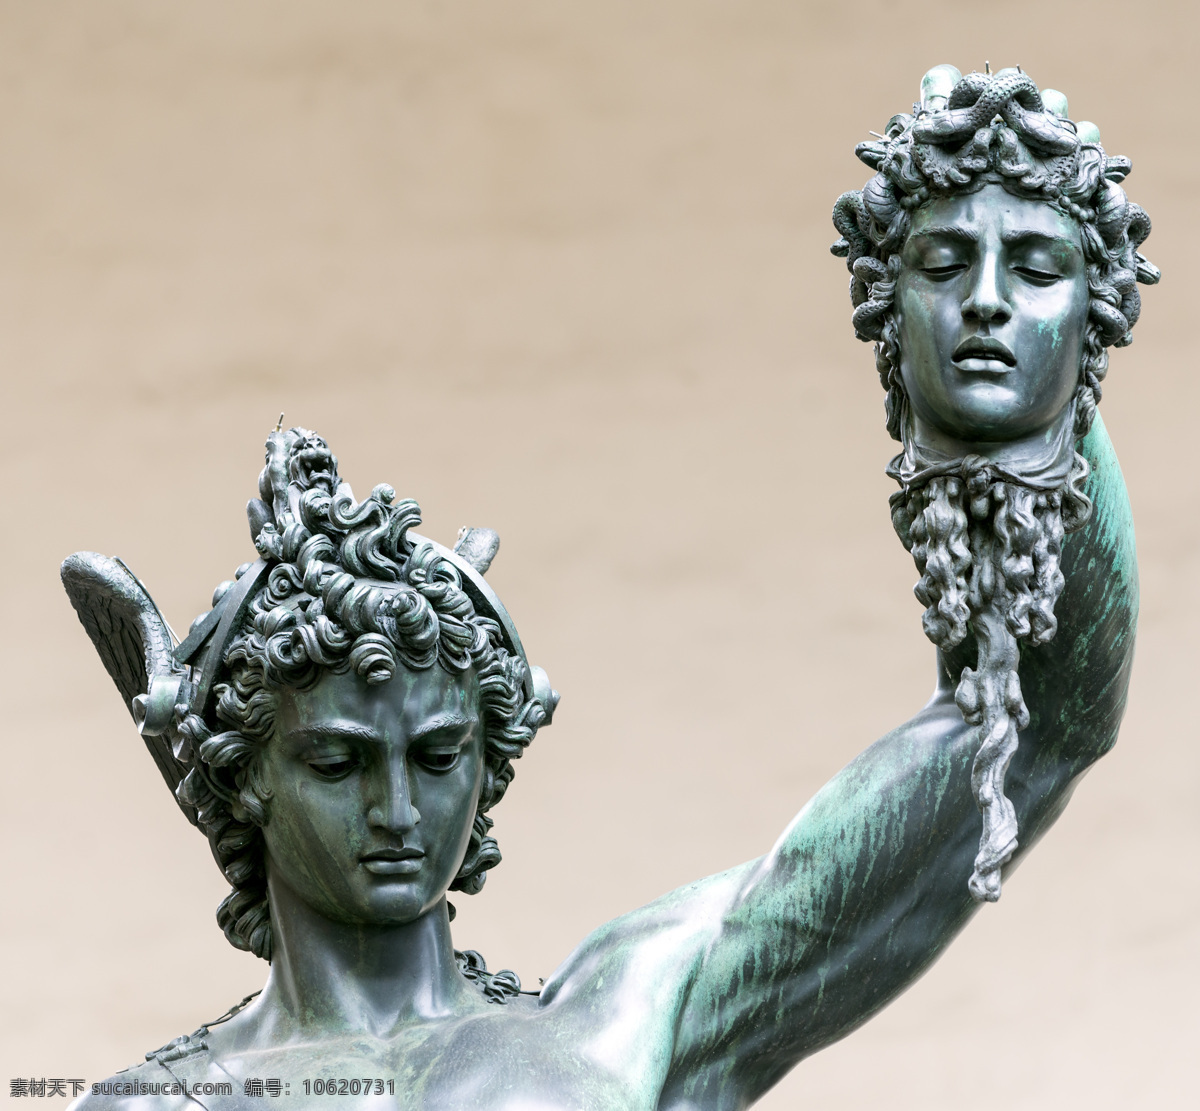 珀尔 修 雕塑 珀尔修雕塑 美杜莎的头颅 佛罗伦萨 意大利 城市 风景 城市雕塑 塑像 石像 石雕 建筑设计 环境家居